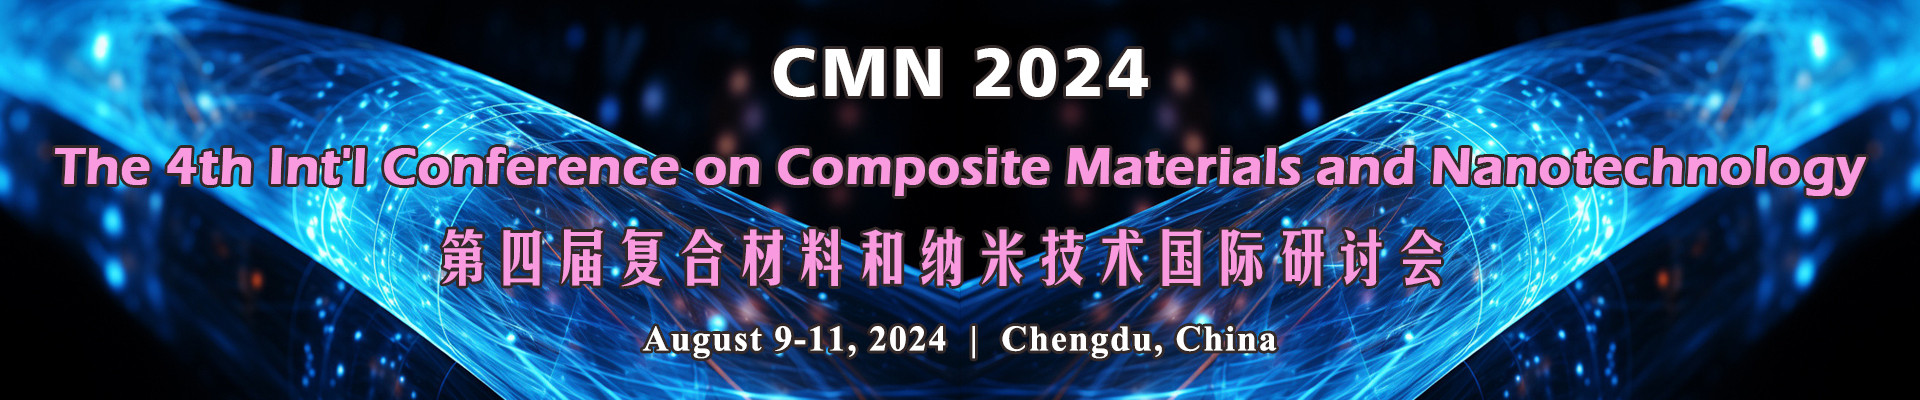 第四届复合材料和纳米技术国际研讨会CMN 2024